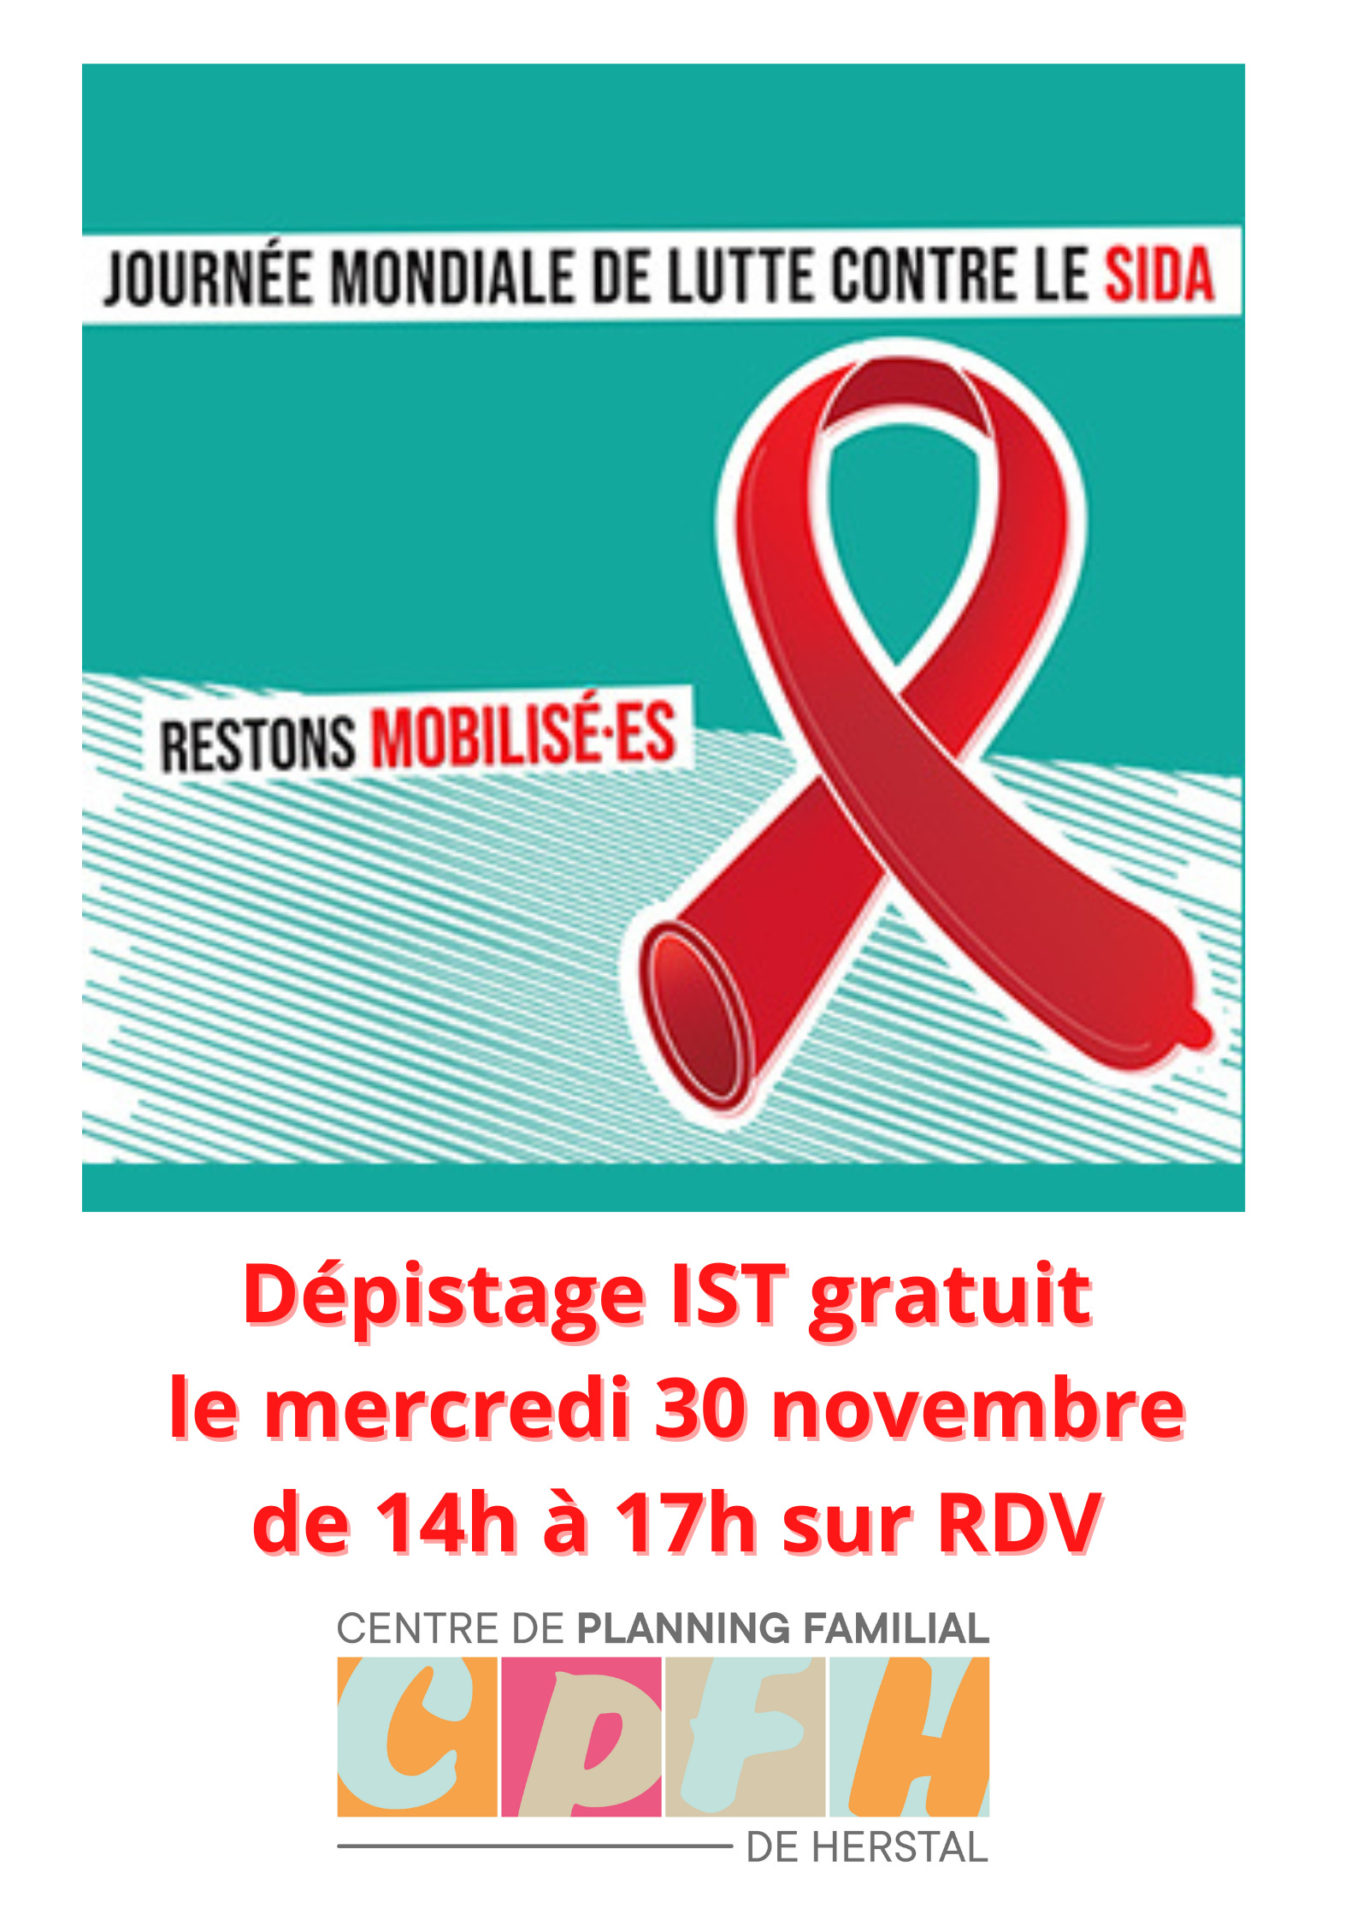 Action du CPFH pour la journée mondiale de lutte contre de SIDA!